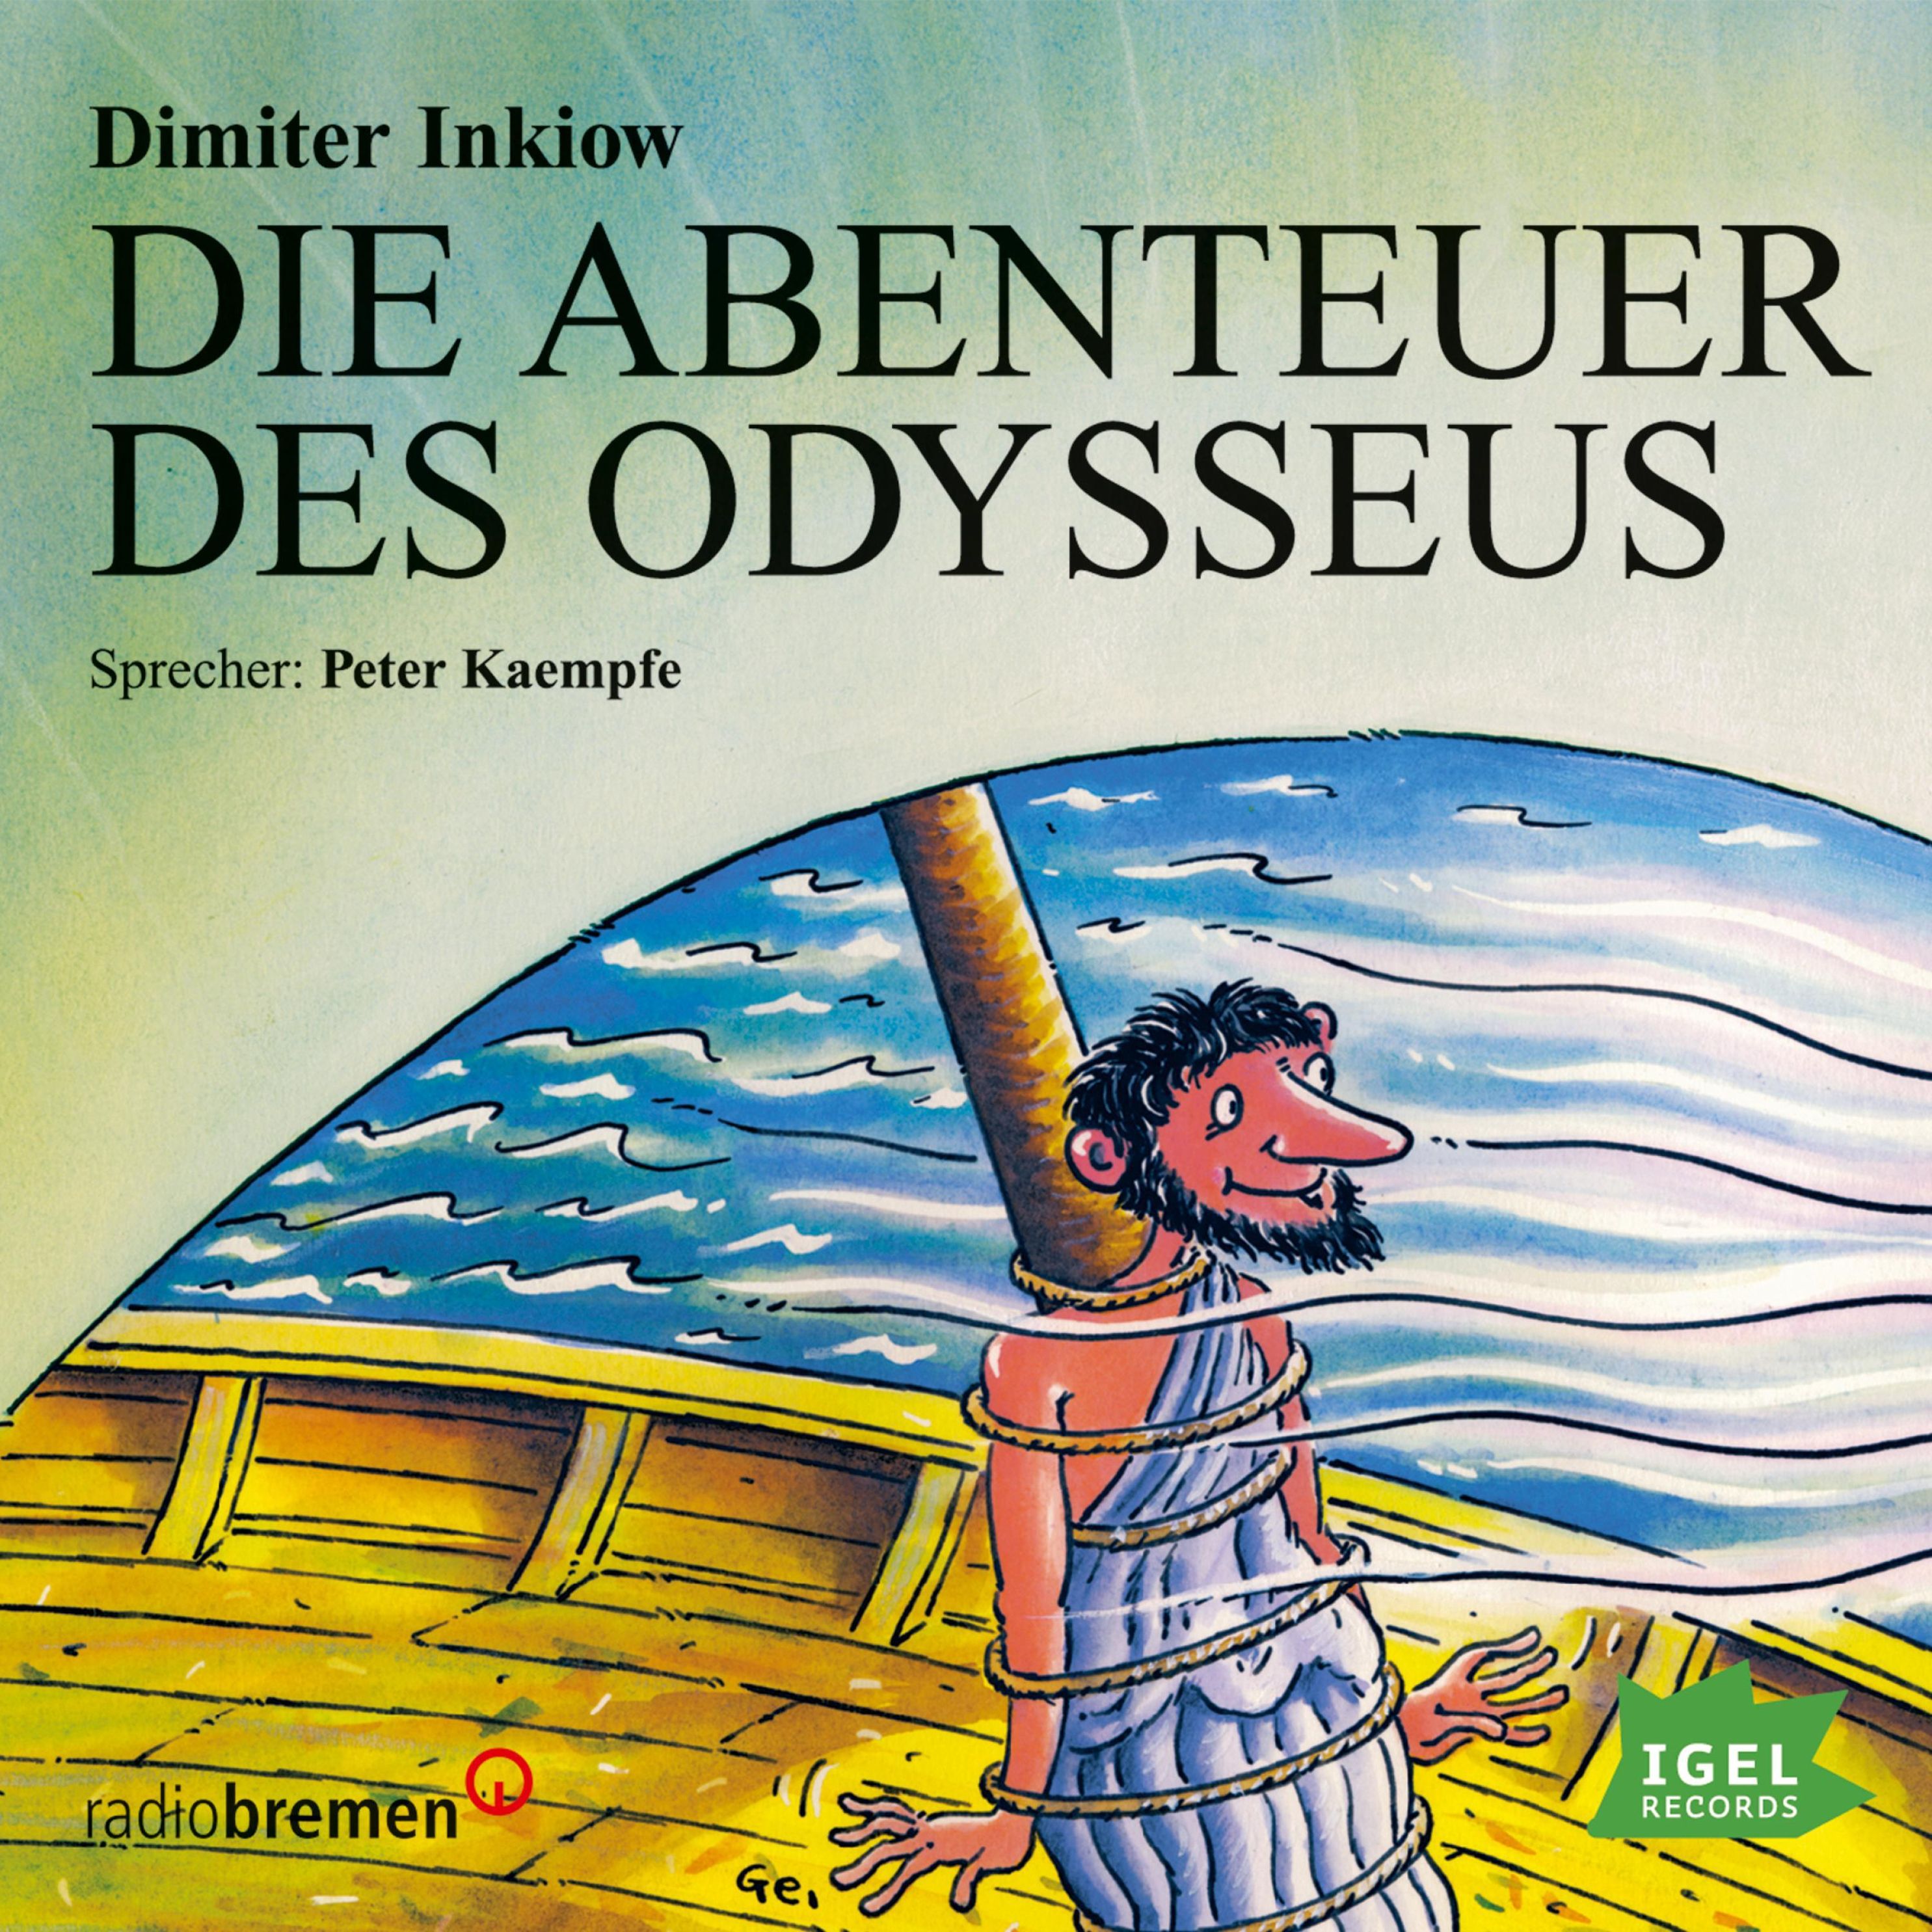 Die Abenteuer des Odysseus Hörbuch downloaden bei Weltbild.at